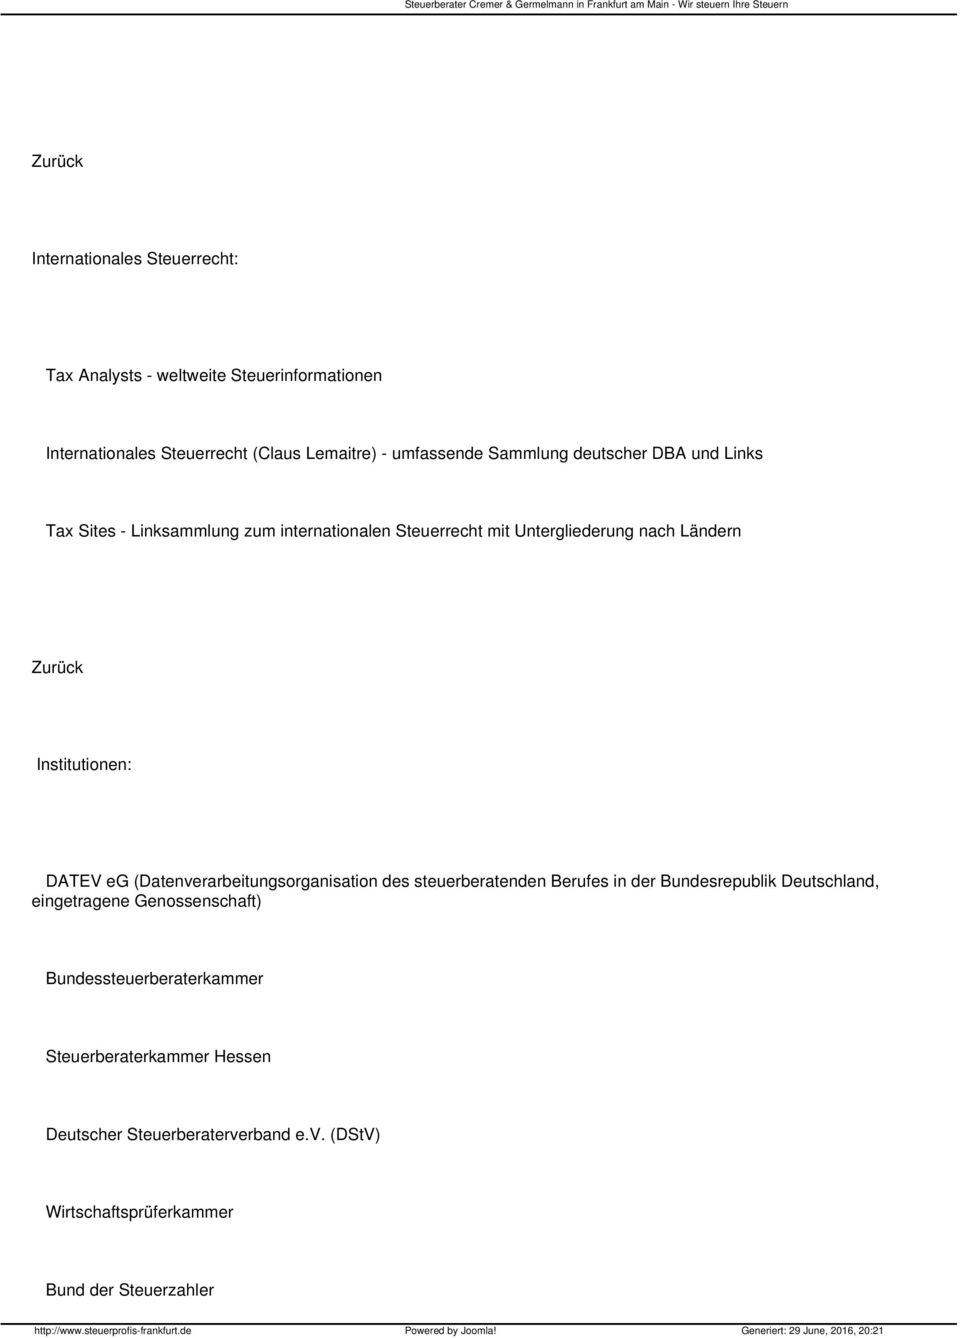 Institutionen: DATEV eg (Datenverarbeitungsorganisation des steuerberatenden Berufes in der Bundesrepublik Deutschland, eingetragene